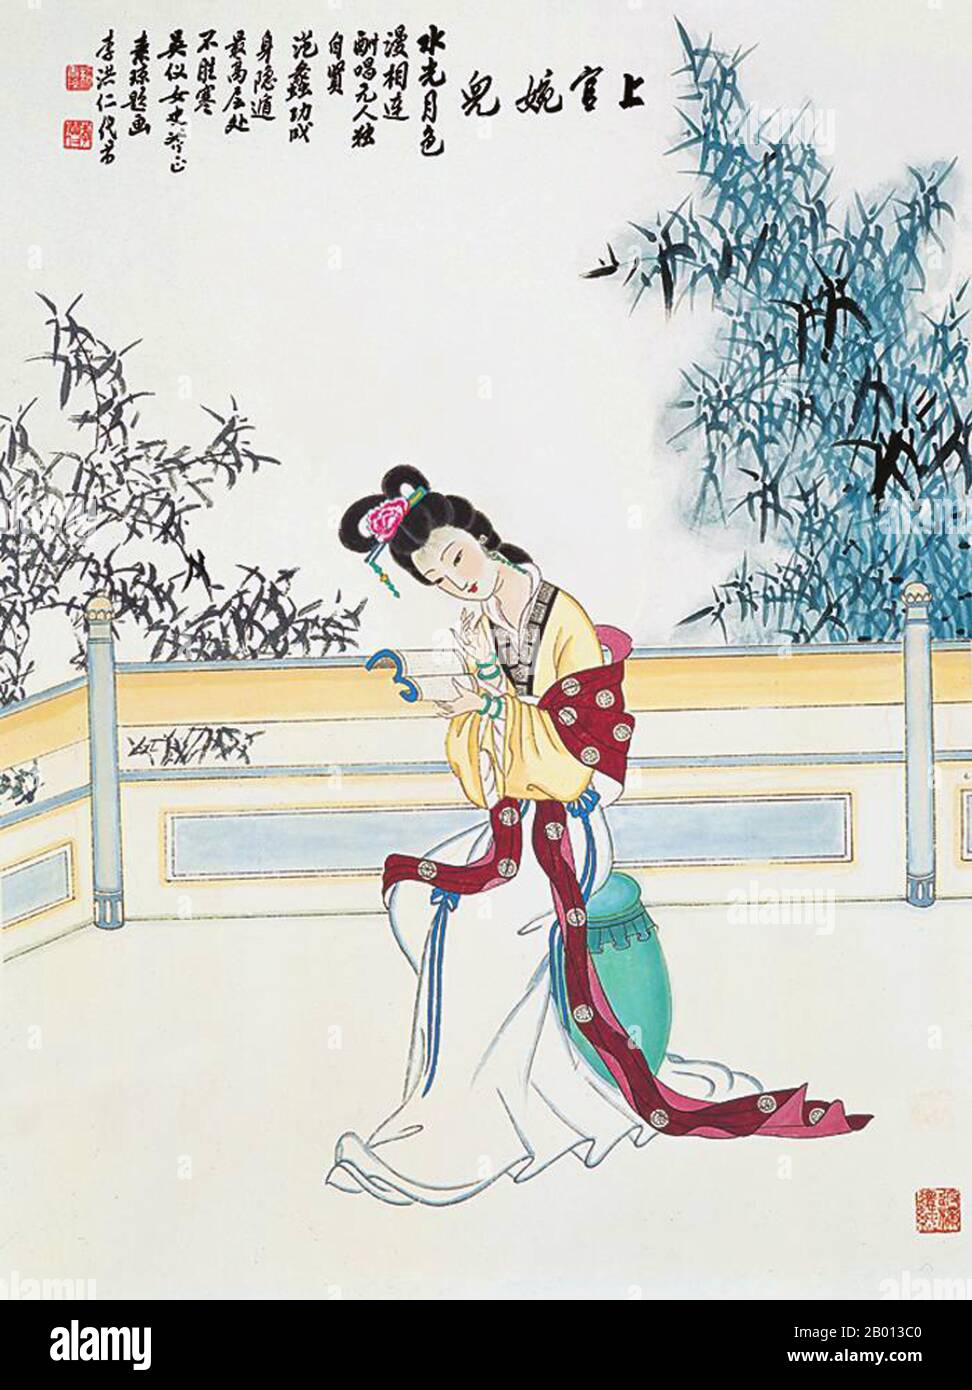 Cina: Shanguan WAN'er (664–710), consorte imperiale dell'imperatore Zhongzong di Tang (705-710). Pittura Handscroll, c. 18 ° secolo. Shanguan WAN'er (664 – 21 luglio 710), consorte imperiale di Zhaorong, nome postumo Wenhui, era la nipote di Shanguan Yi (ex duca di Chu) ed era una delle donne più famose della storia cinese per il suo talento. Fu poeta, scrittore e politico della dinastia Tang, nonché consorte imperiale (concubina) dell'imperatore Zhongzong. Foto Stock